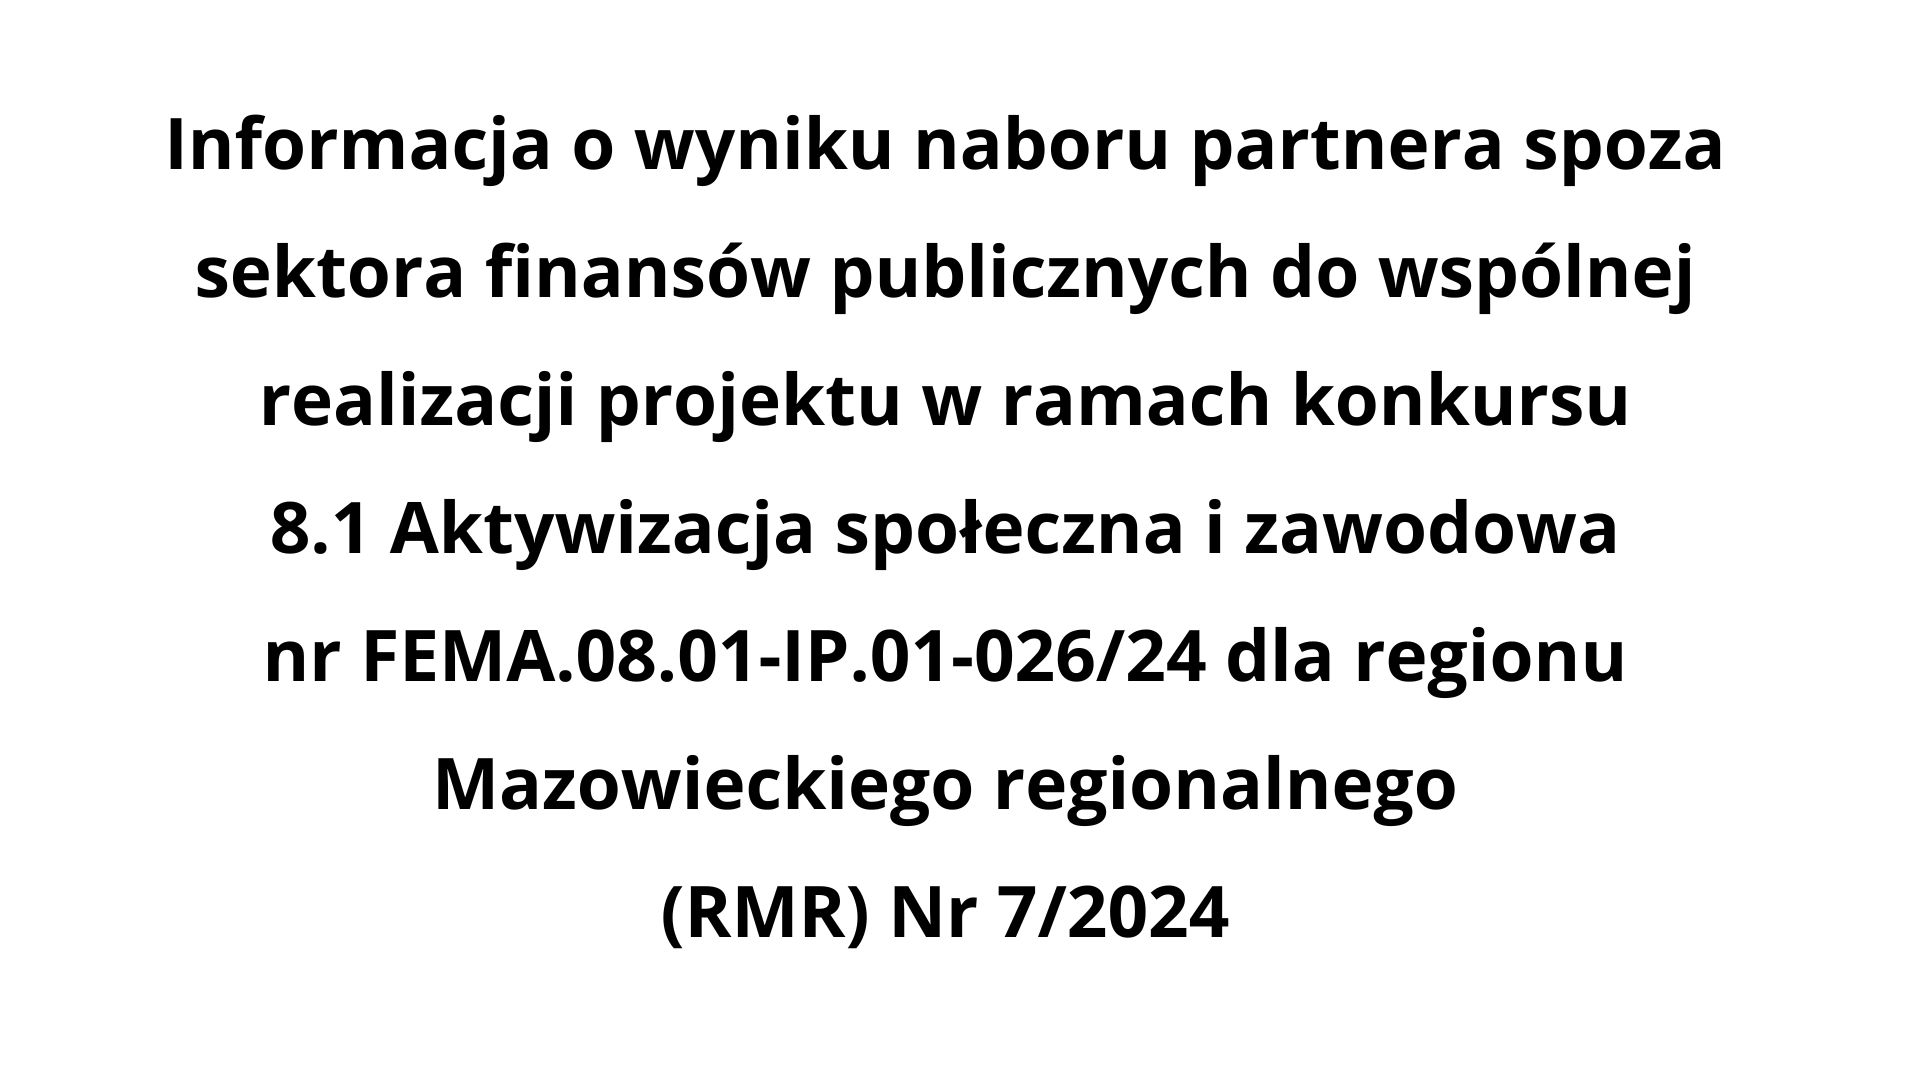 Informacja o wyniku naboru partnera spoza sektora finansów publicznych do wspólnej realizacji projektu